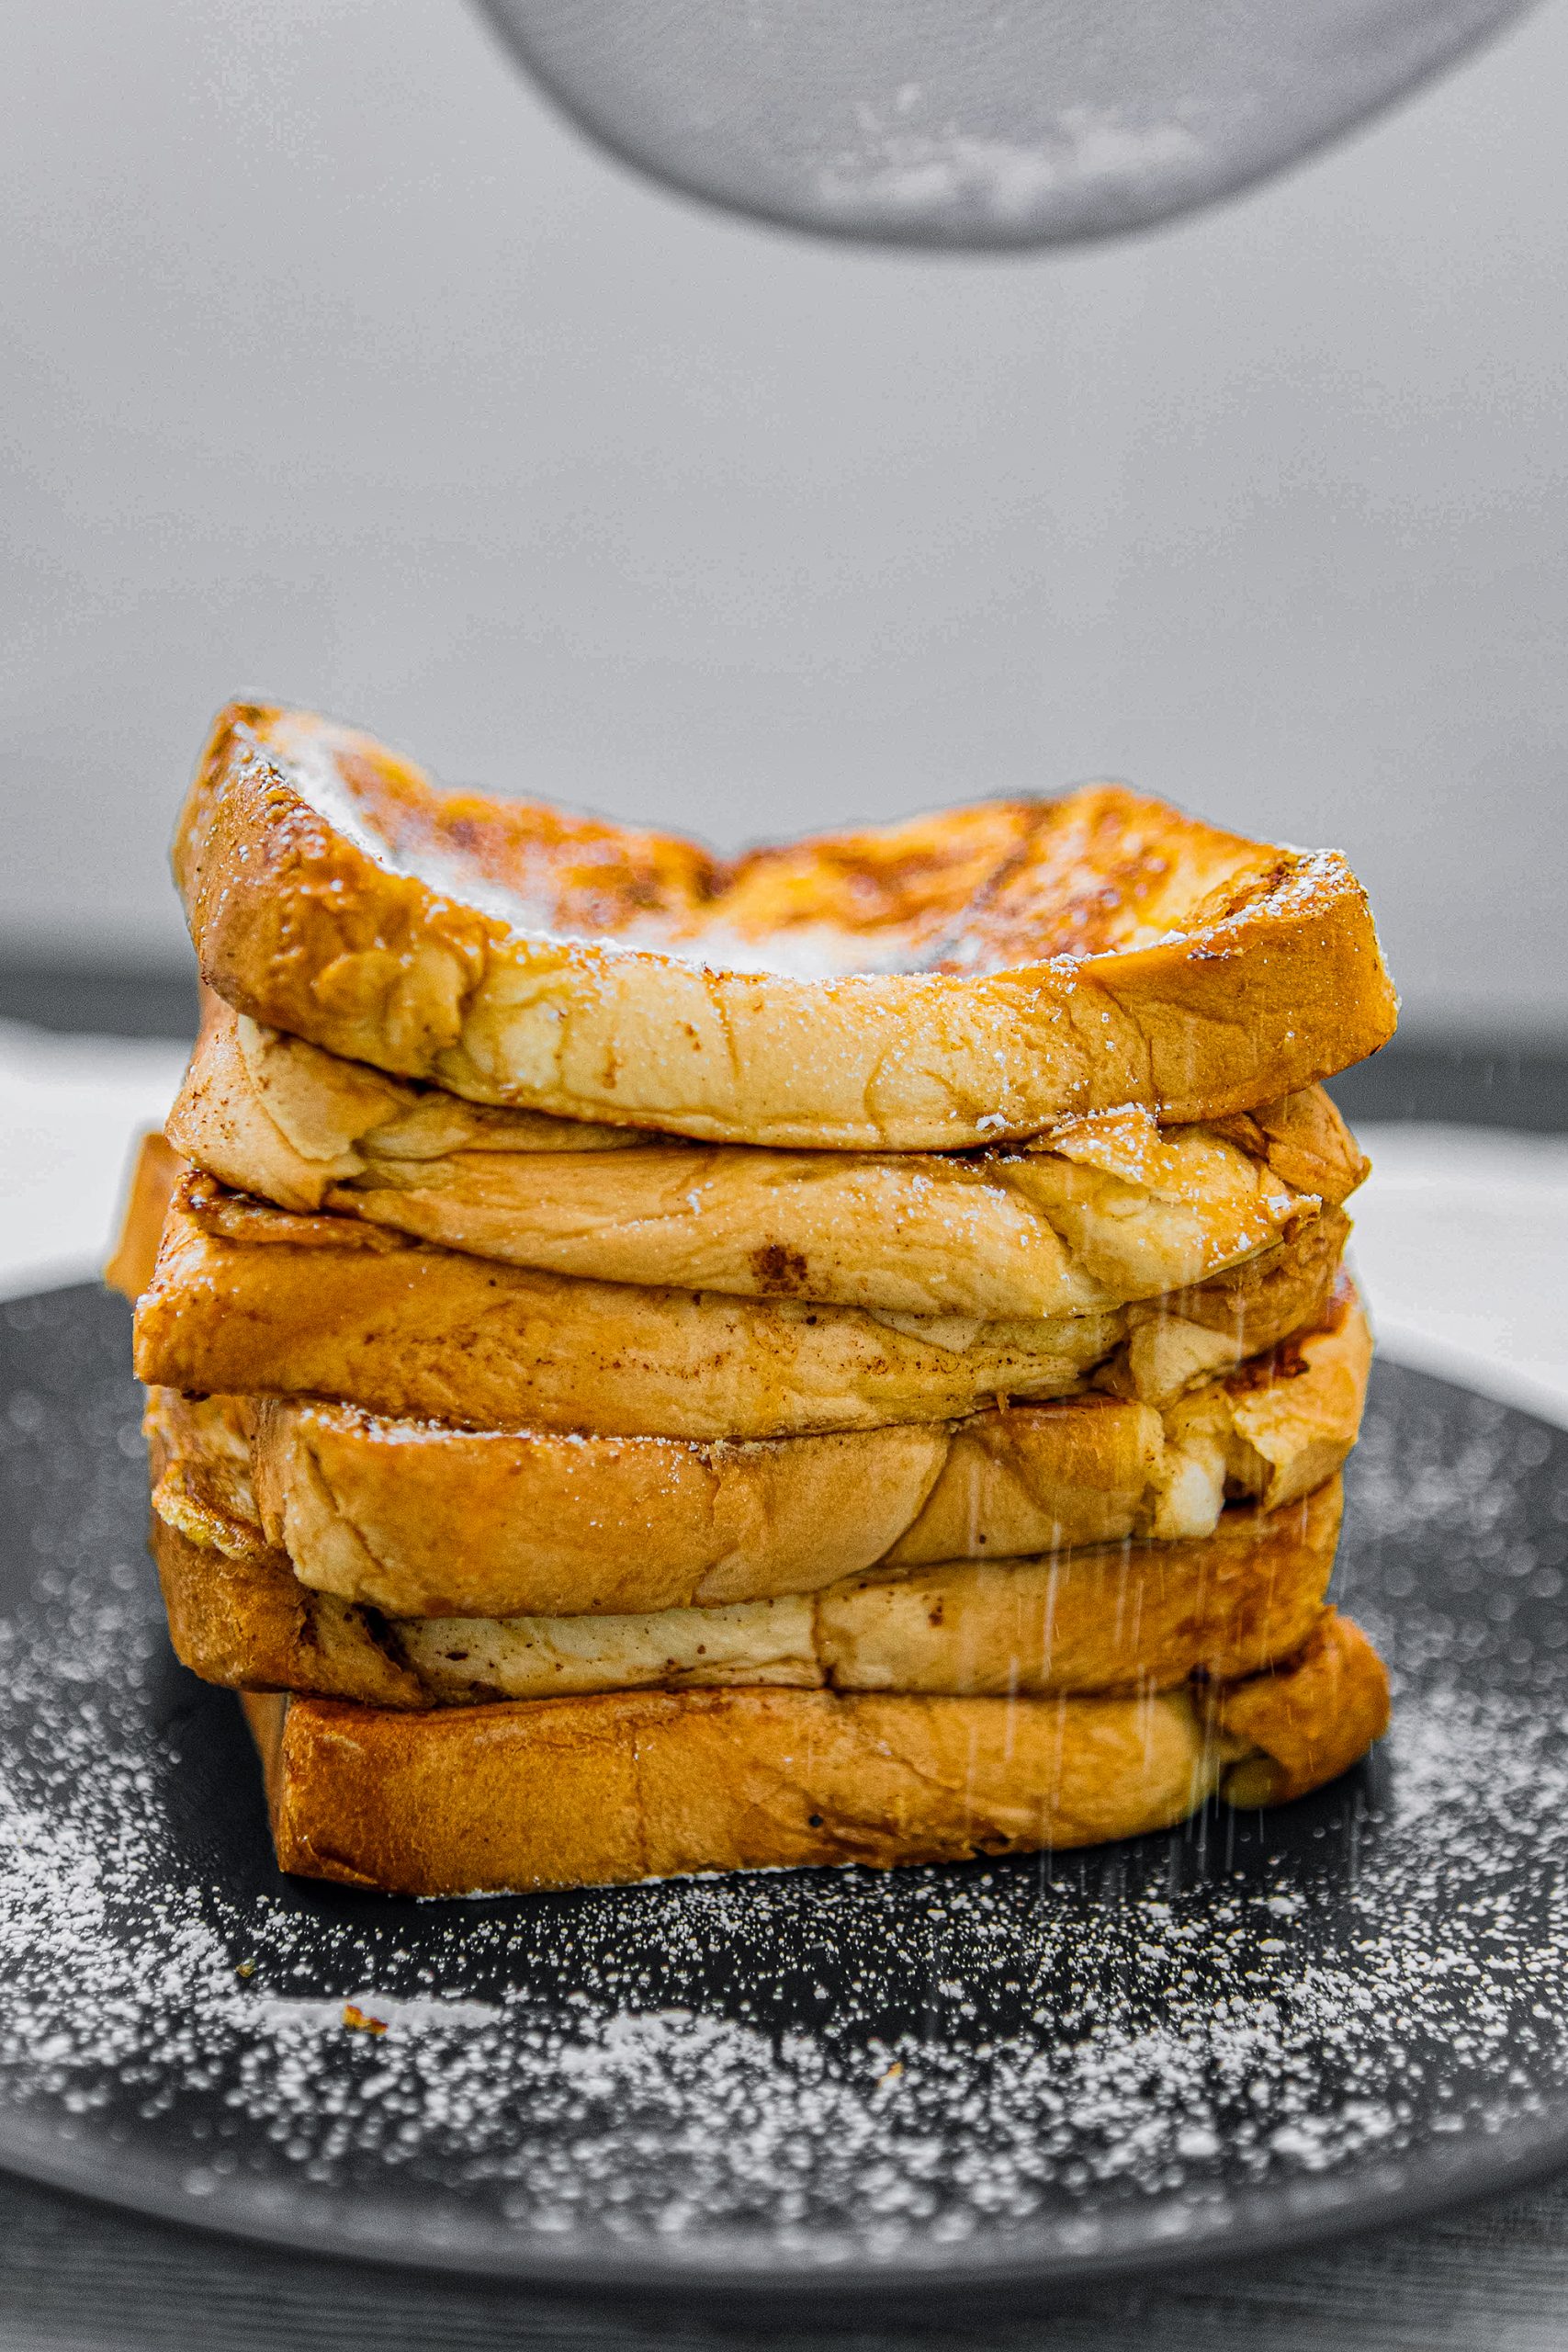 french toast breakfast, french toast breakfast recipe

